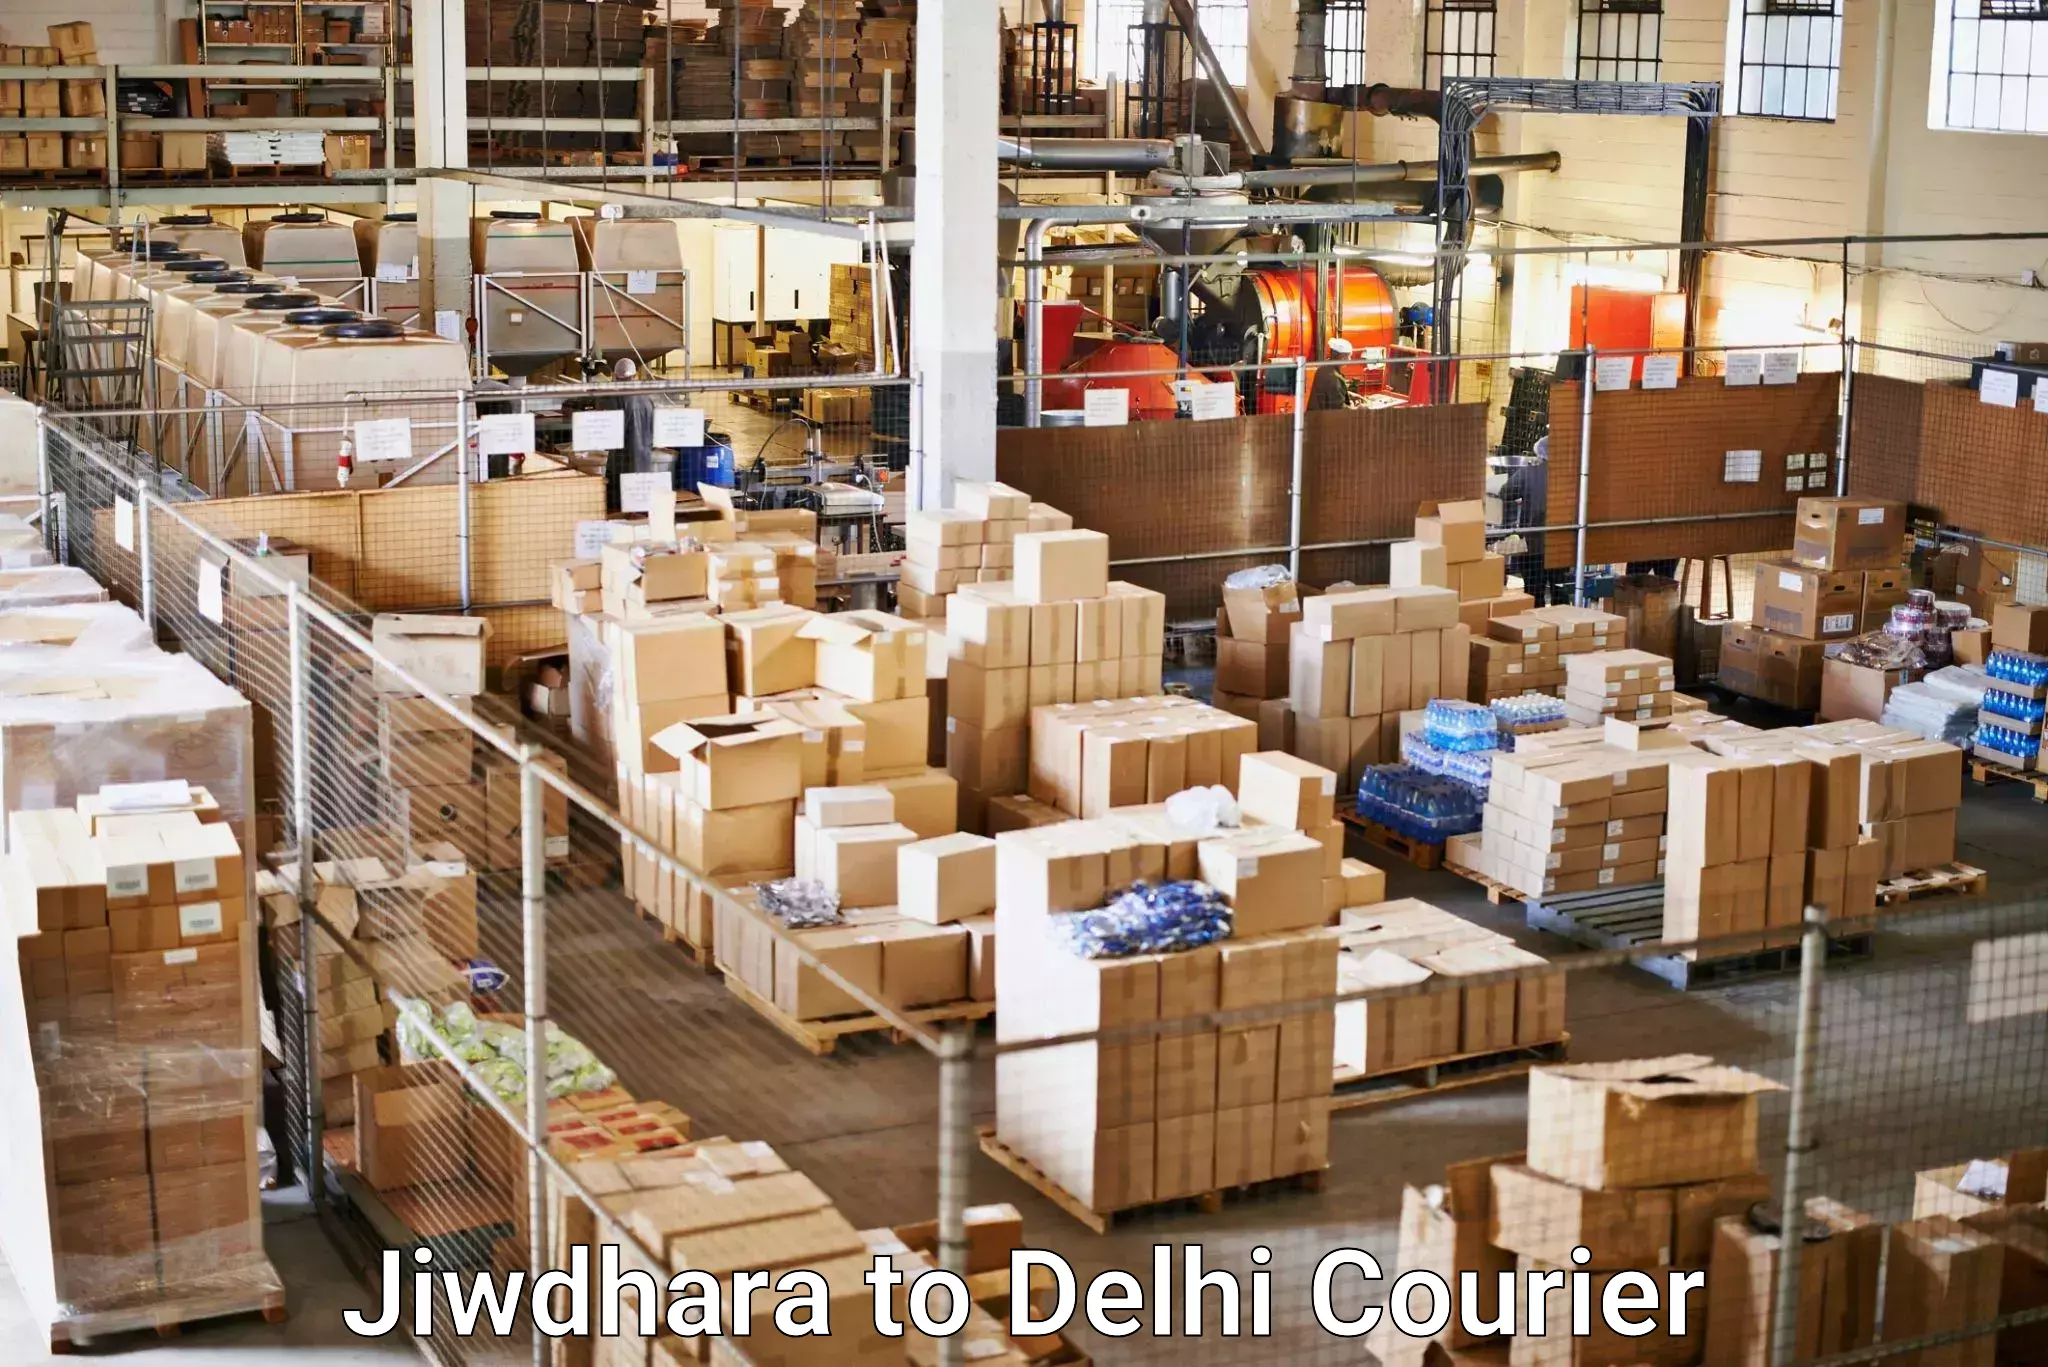 24/7 shipping services Jiwdhara to NIT Delhi